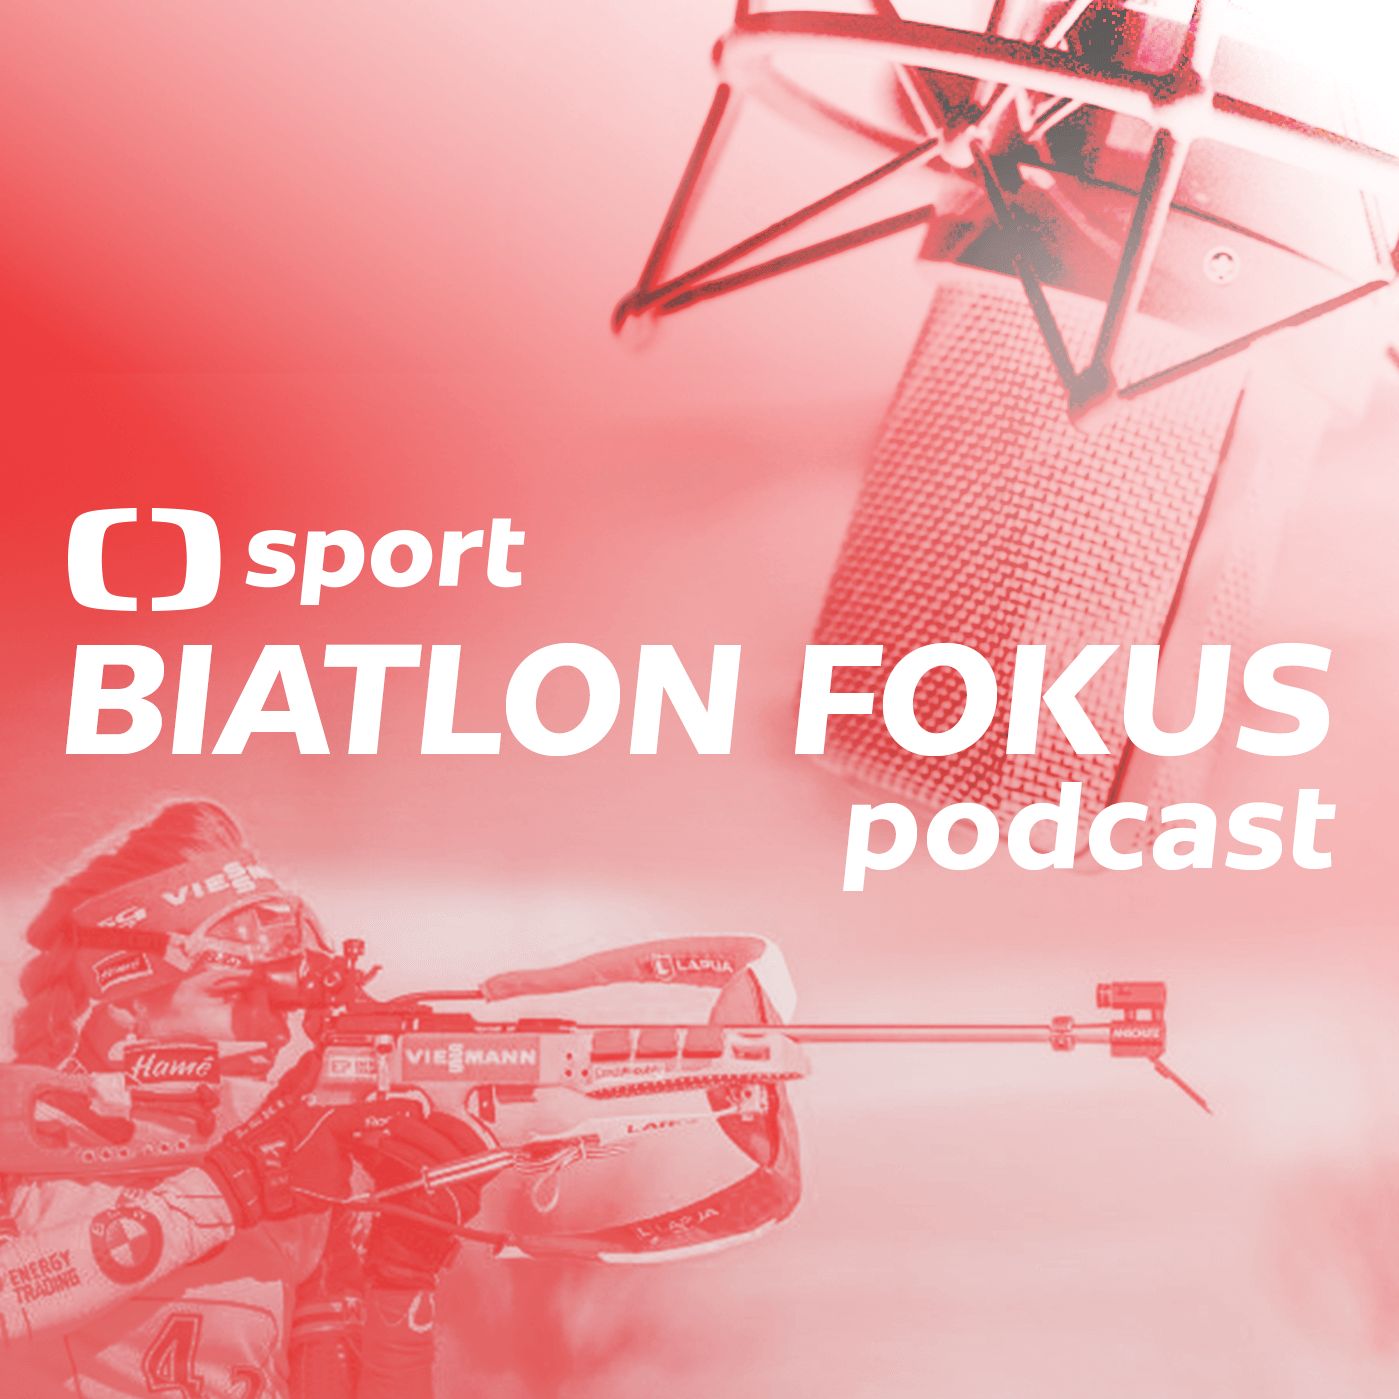 Biatlon fokus podcast: Může být český biatlon úspěšný i bez Rybáře a Koukalové?